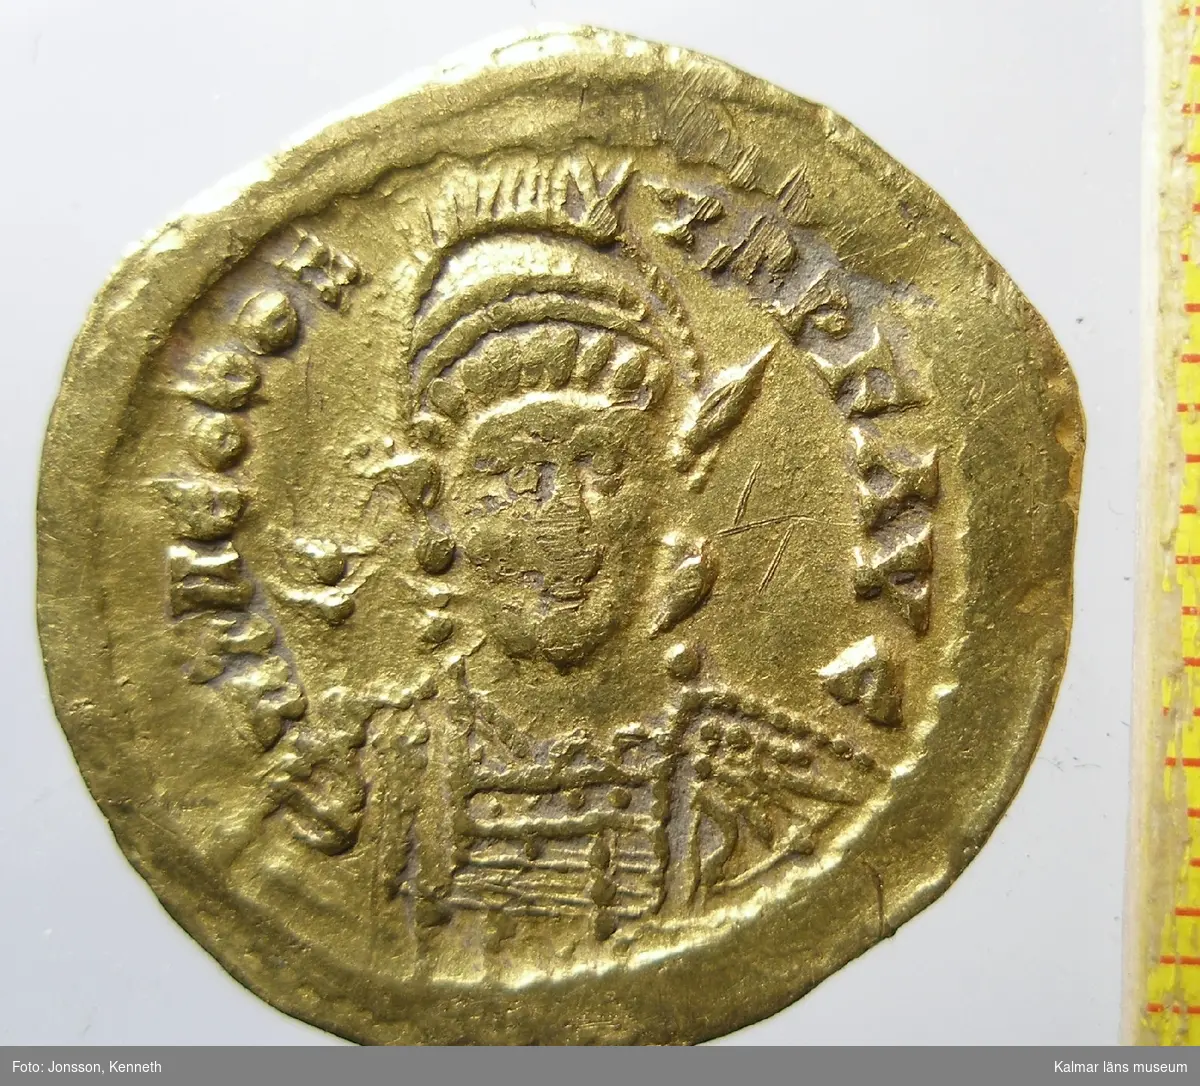 KLM 25382 Mynt, solidus, guld. Präglad för Theodosius II (408-450), imitation. Bestämning: F 345.